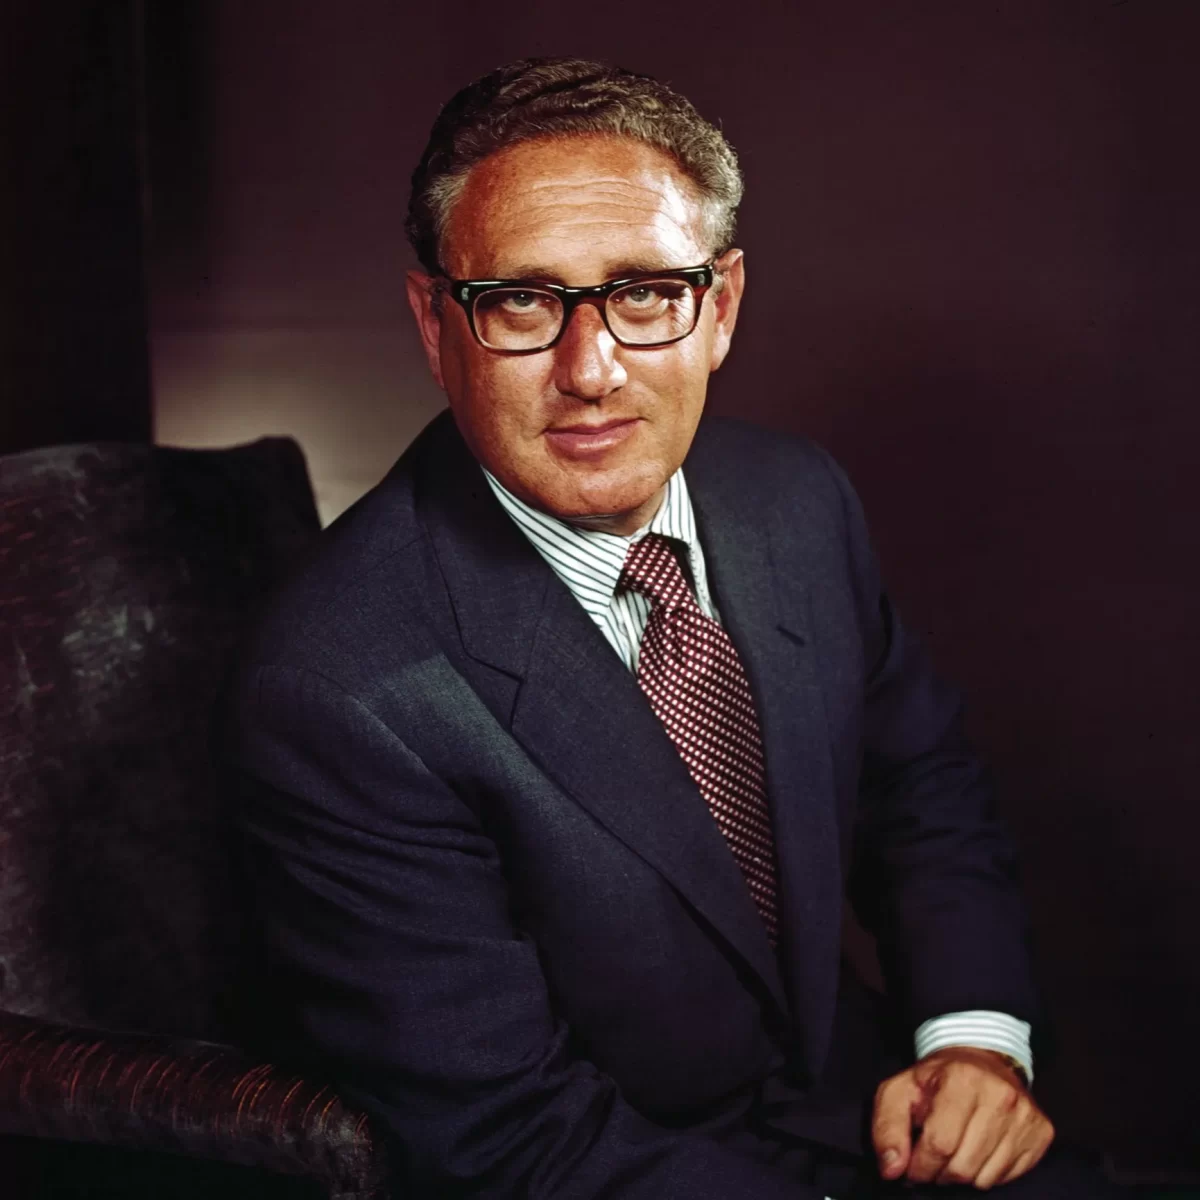 Henry+Kissinger+in+1972+%28Courtesy+of+The+New+Yorker%29.